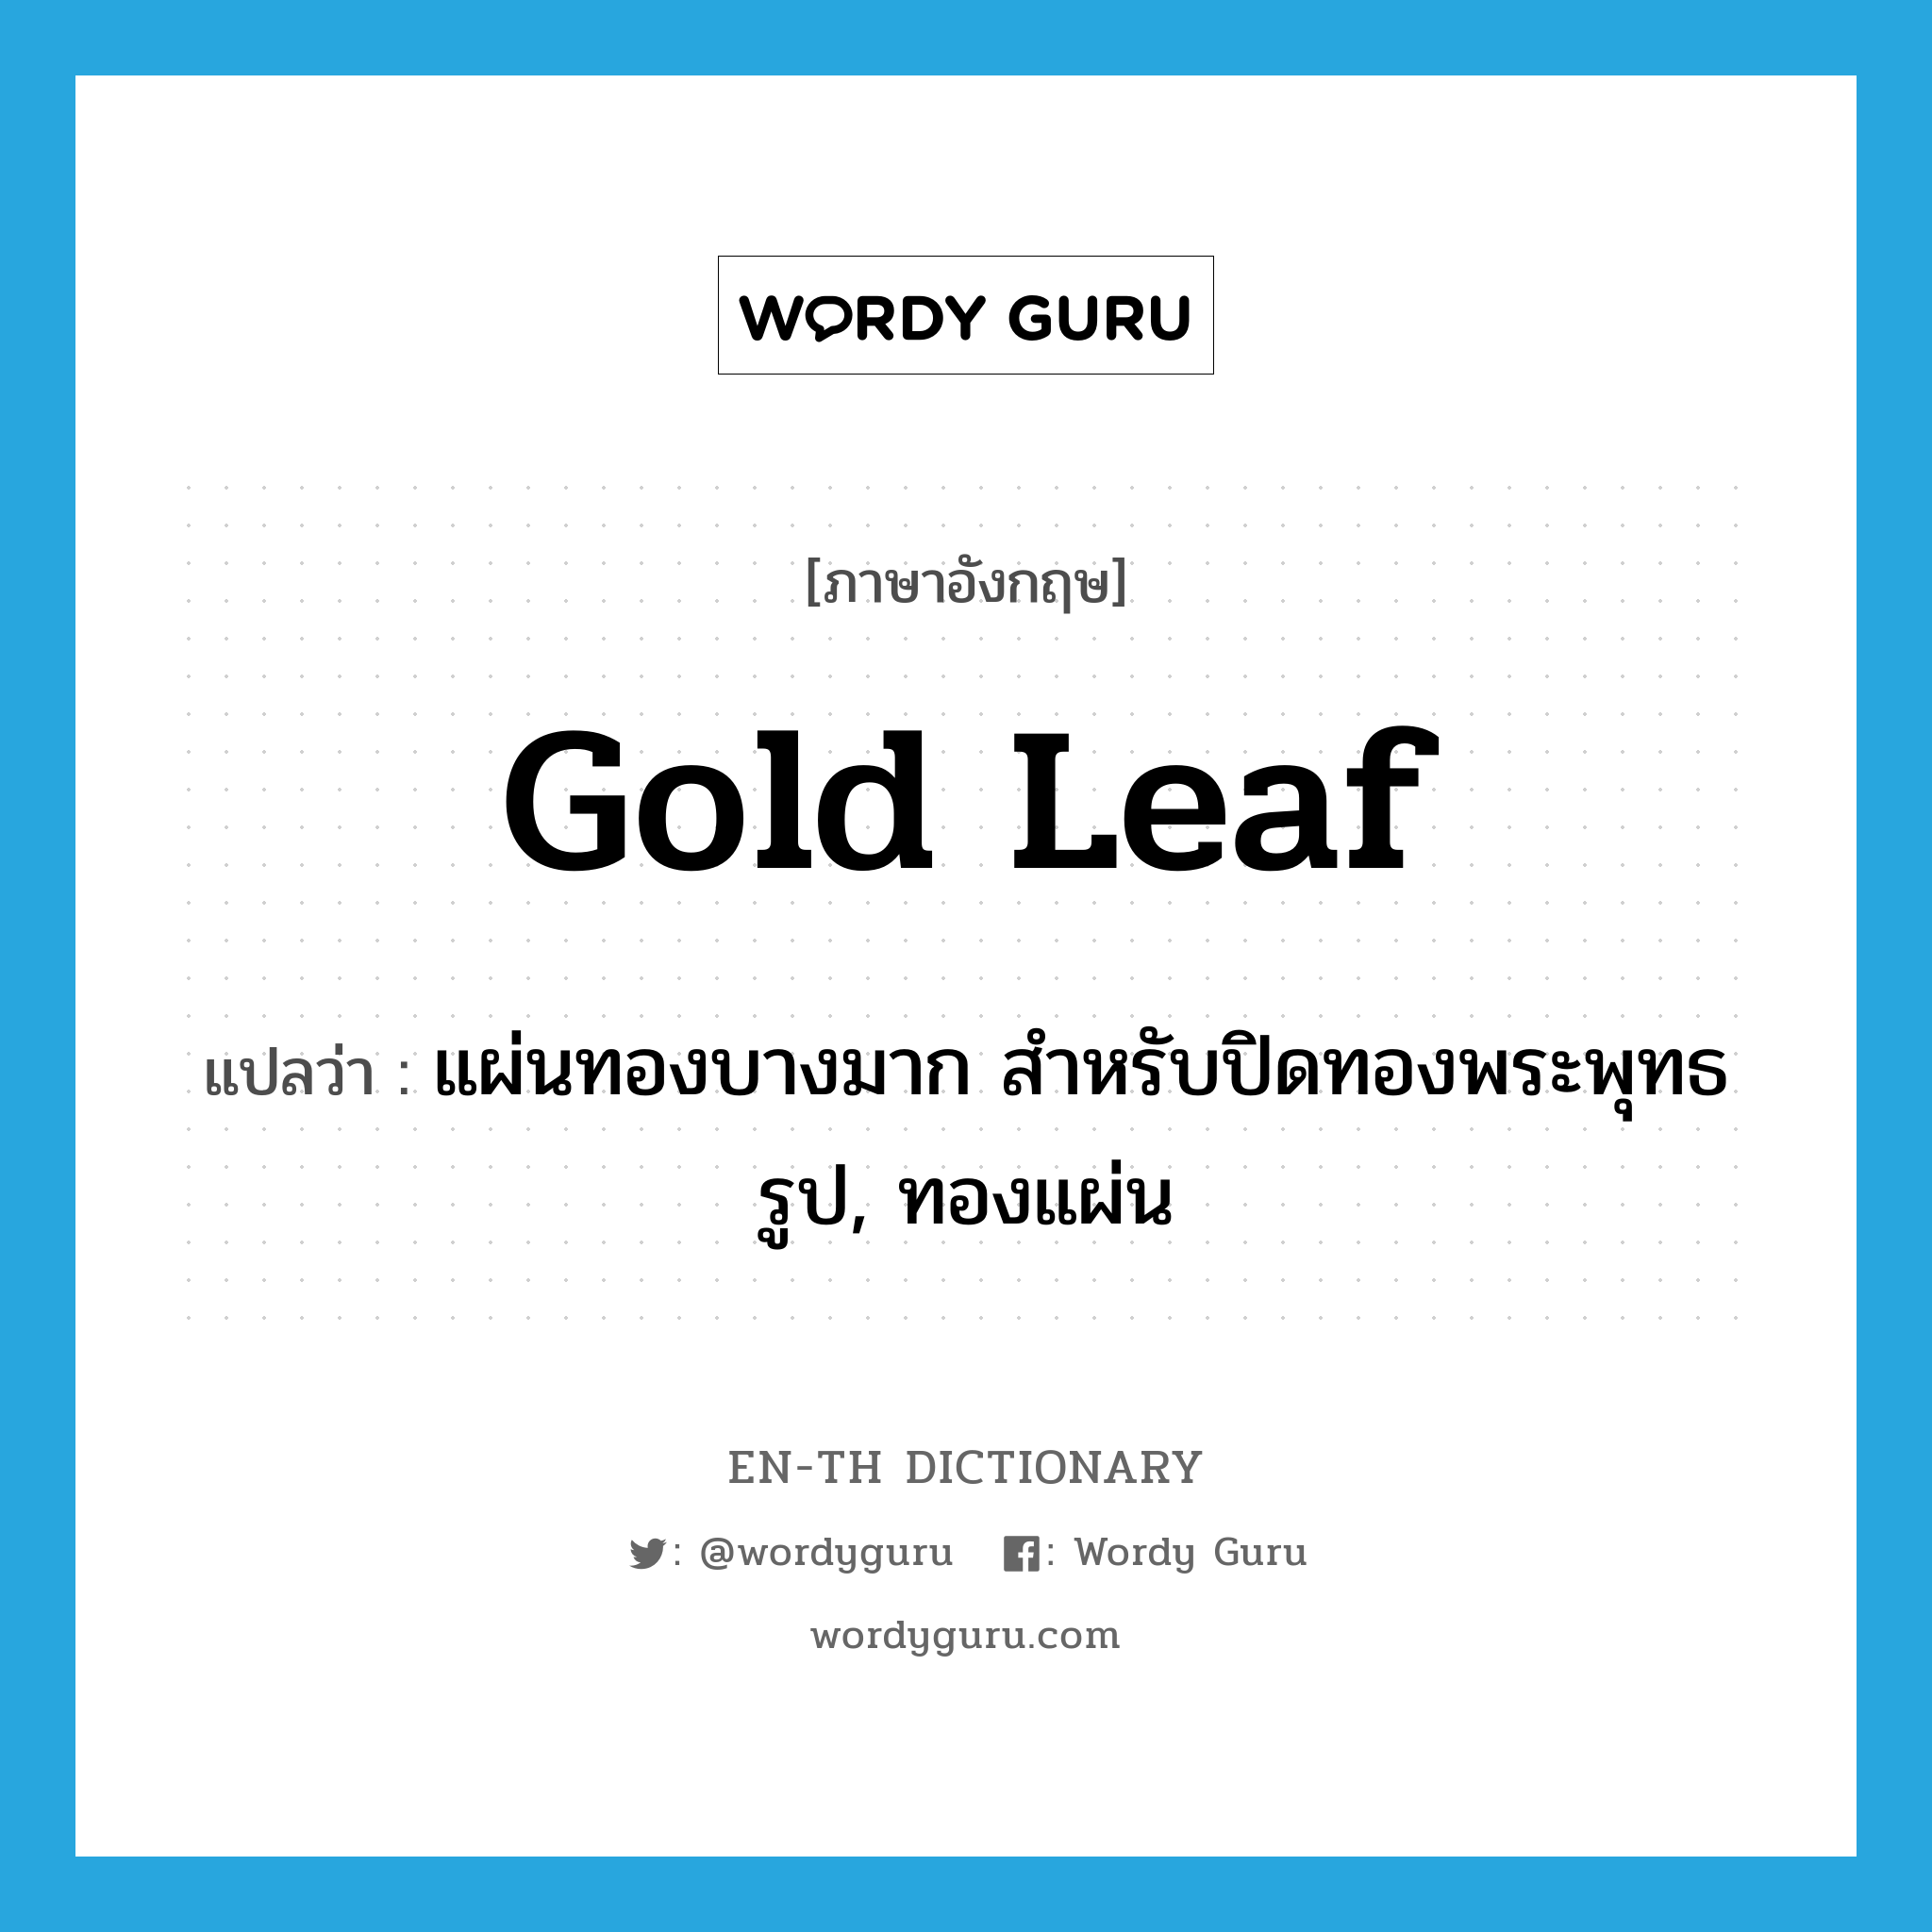 gold leaf แปลว่า?, คำศัพท์ภาษาอังกฤษ gold leaf แปลว่า แผ่นทองบางมาก สำหรับปิดทองพระพุทธรูป, ทองแผ่น ประเภท N หมวด N